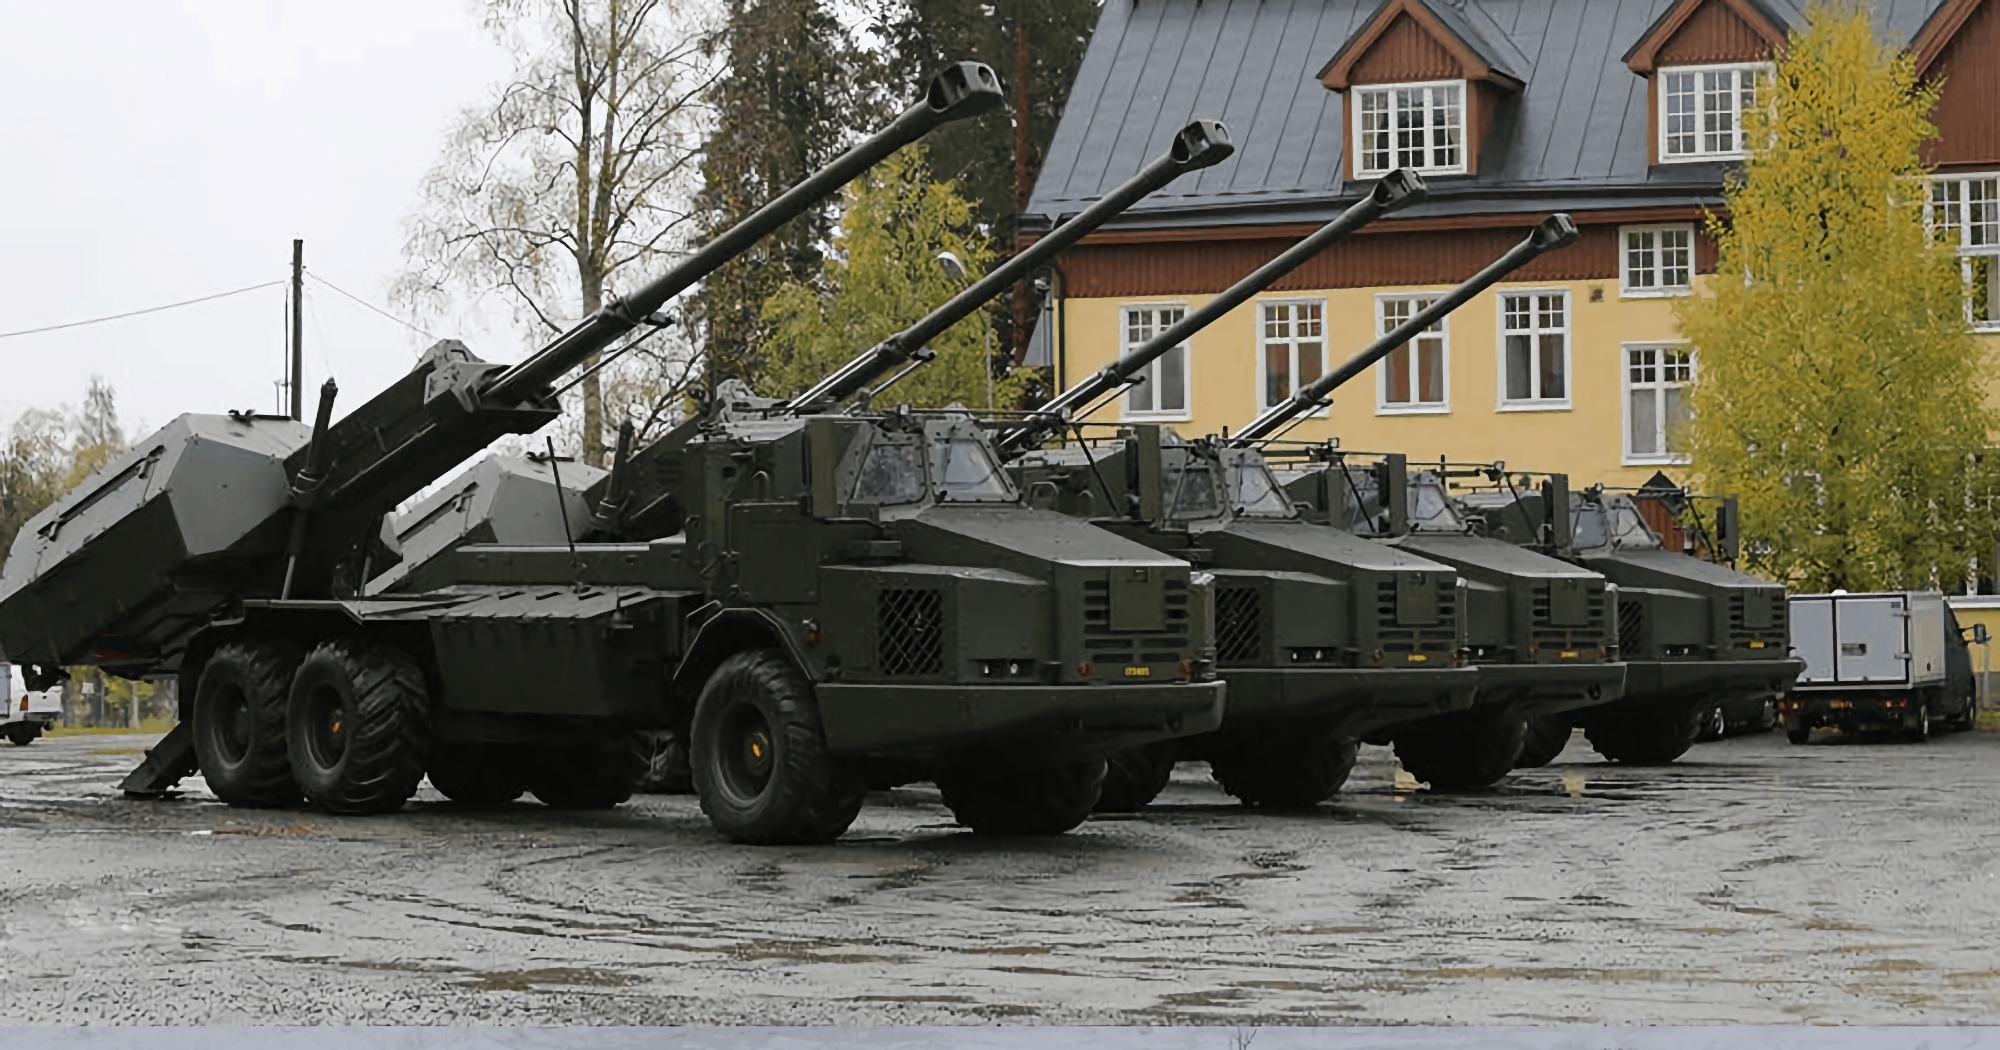 È ufficiale: La Svezia fornirà all'Ucraina 8 unità avanzate di artiglieria semovente Archer, in grado di sparare più di 21 colpi in 3,5 minuti.